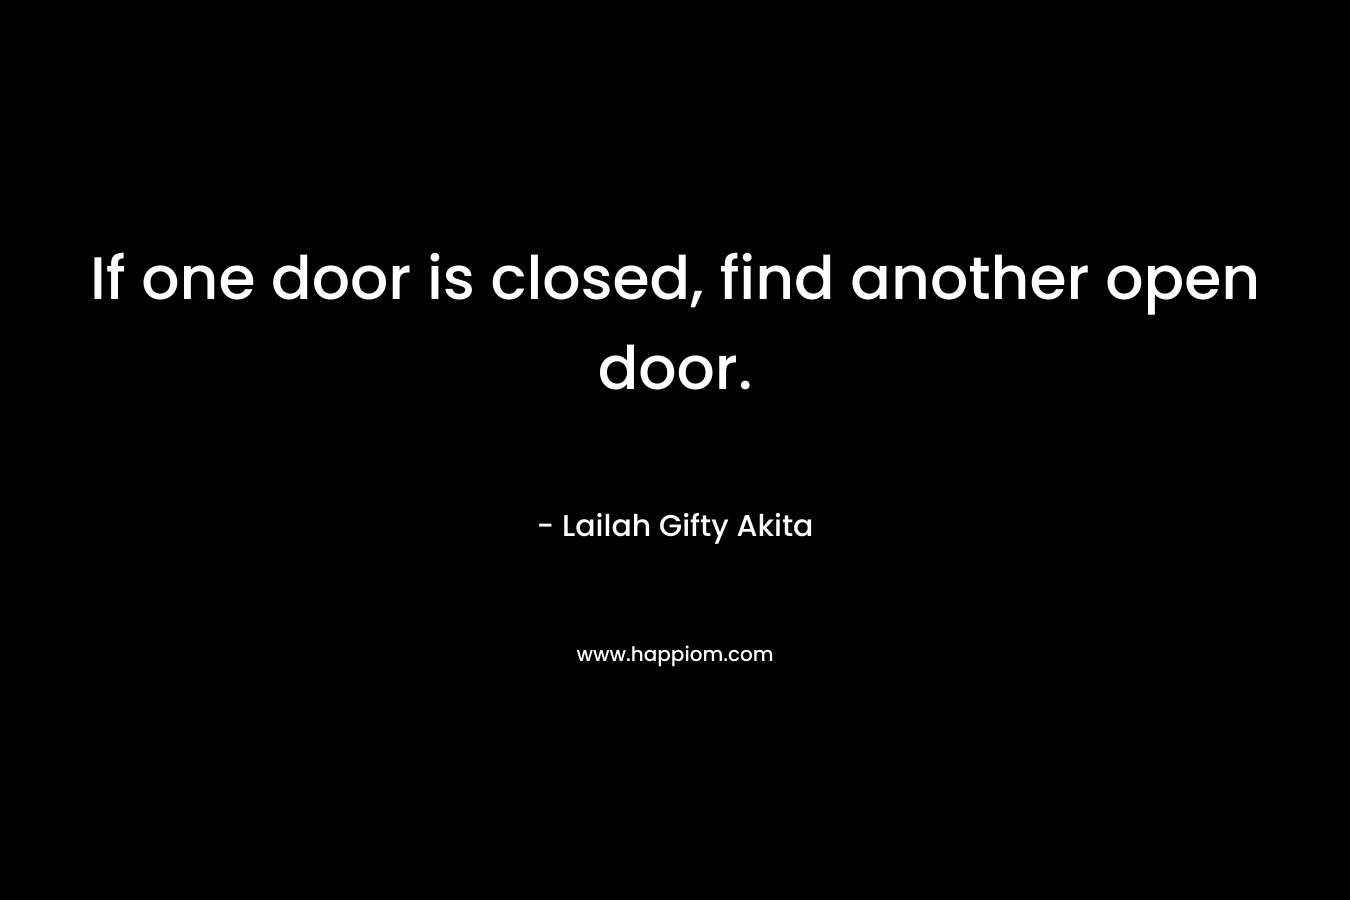 If one door is closed, find another open door.